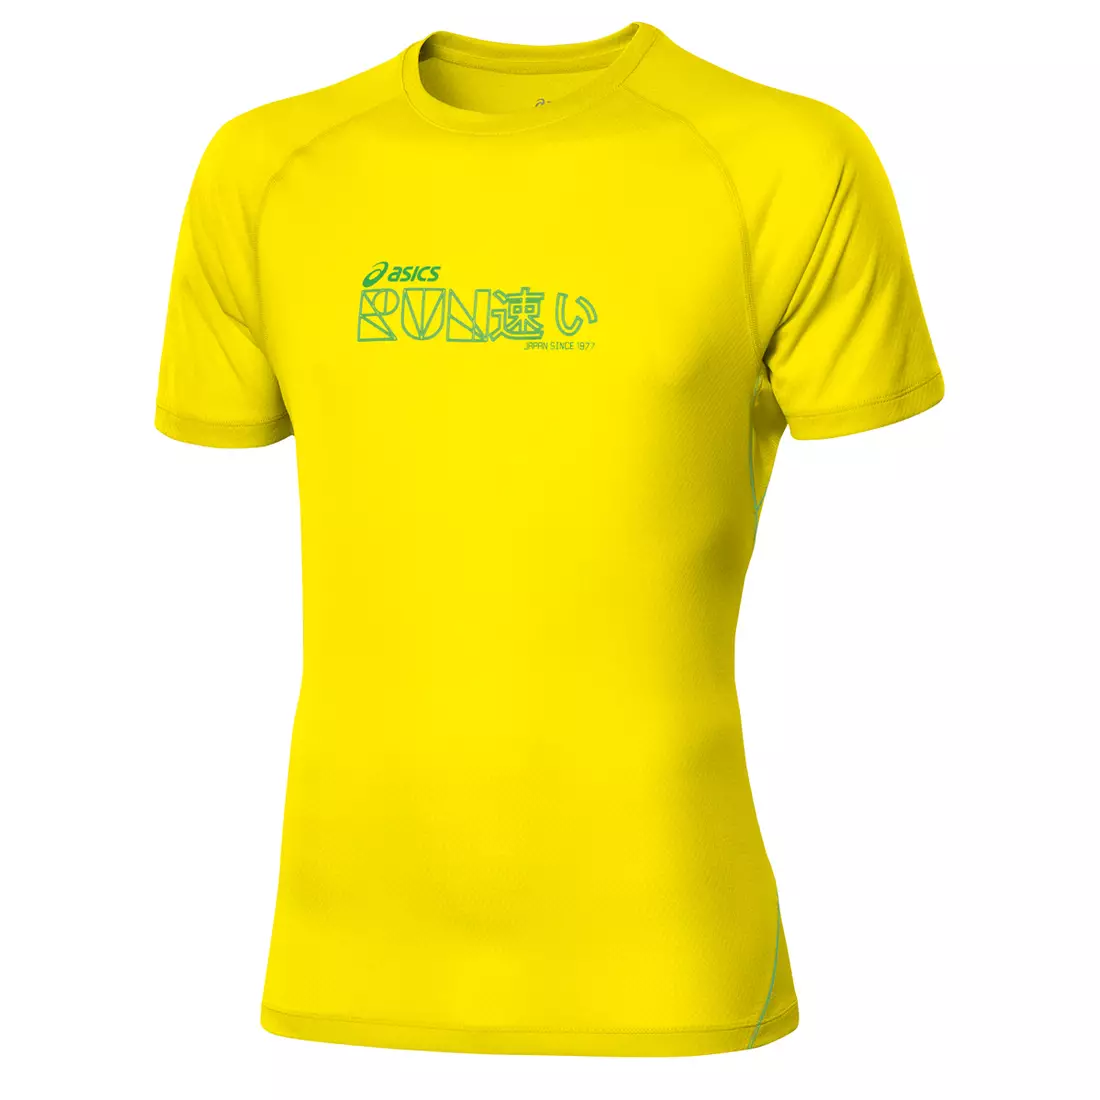 ASICS 110506-0343 GRAPHIC TOP - tricou alergare pentru bărbați, culoare: Galben